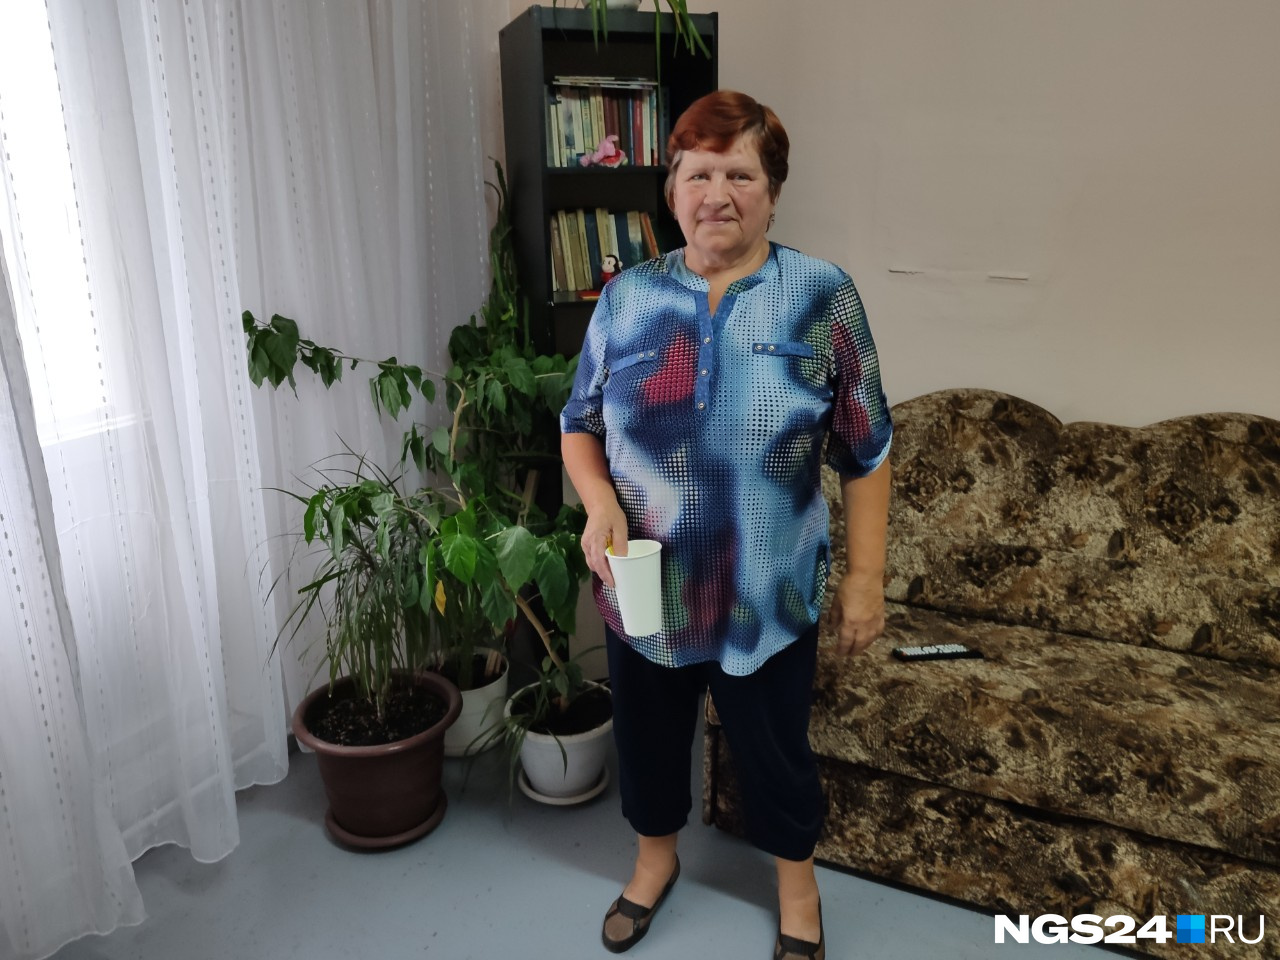 Людмила Анатольевна приехала в Красноярск с внуком и невесткой